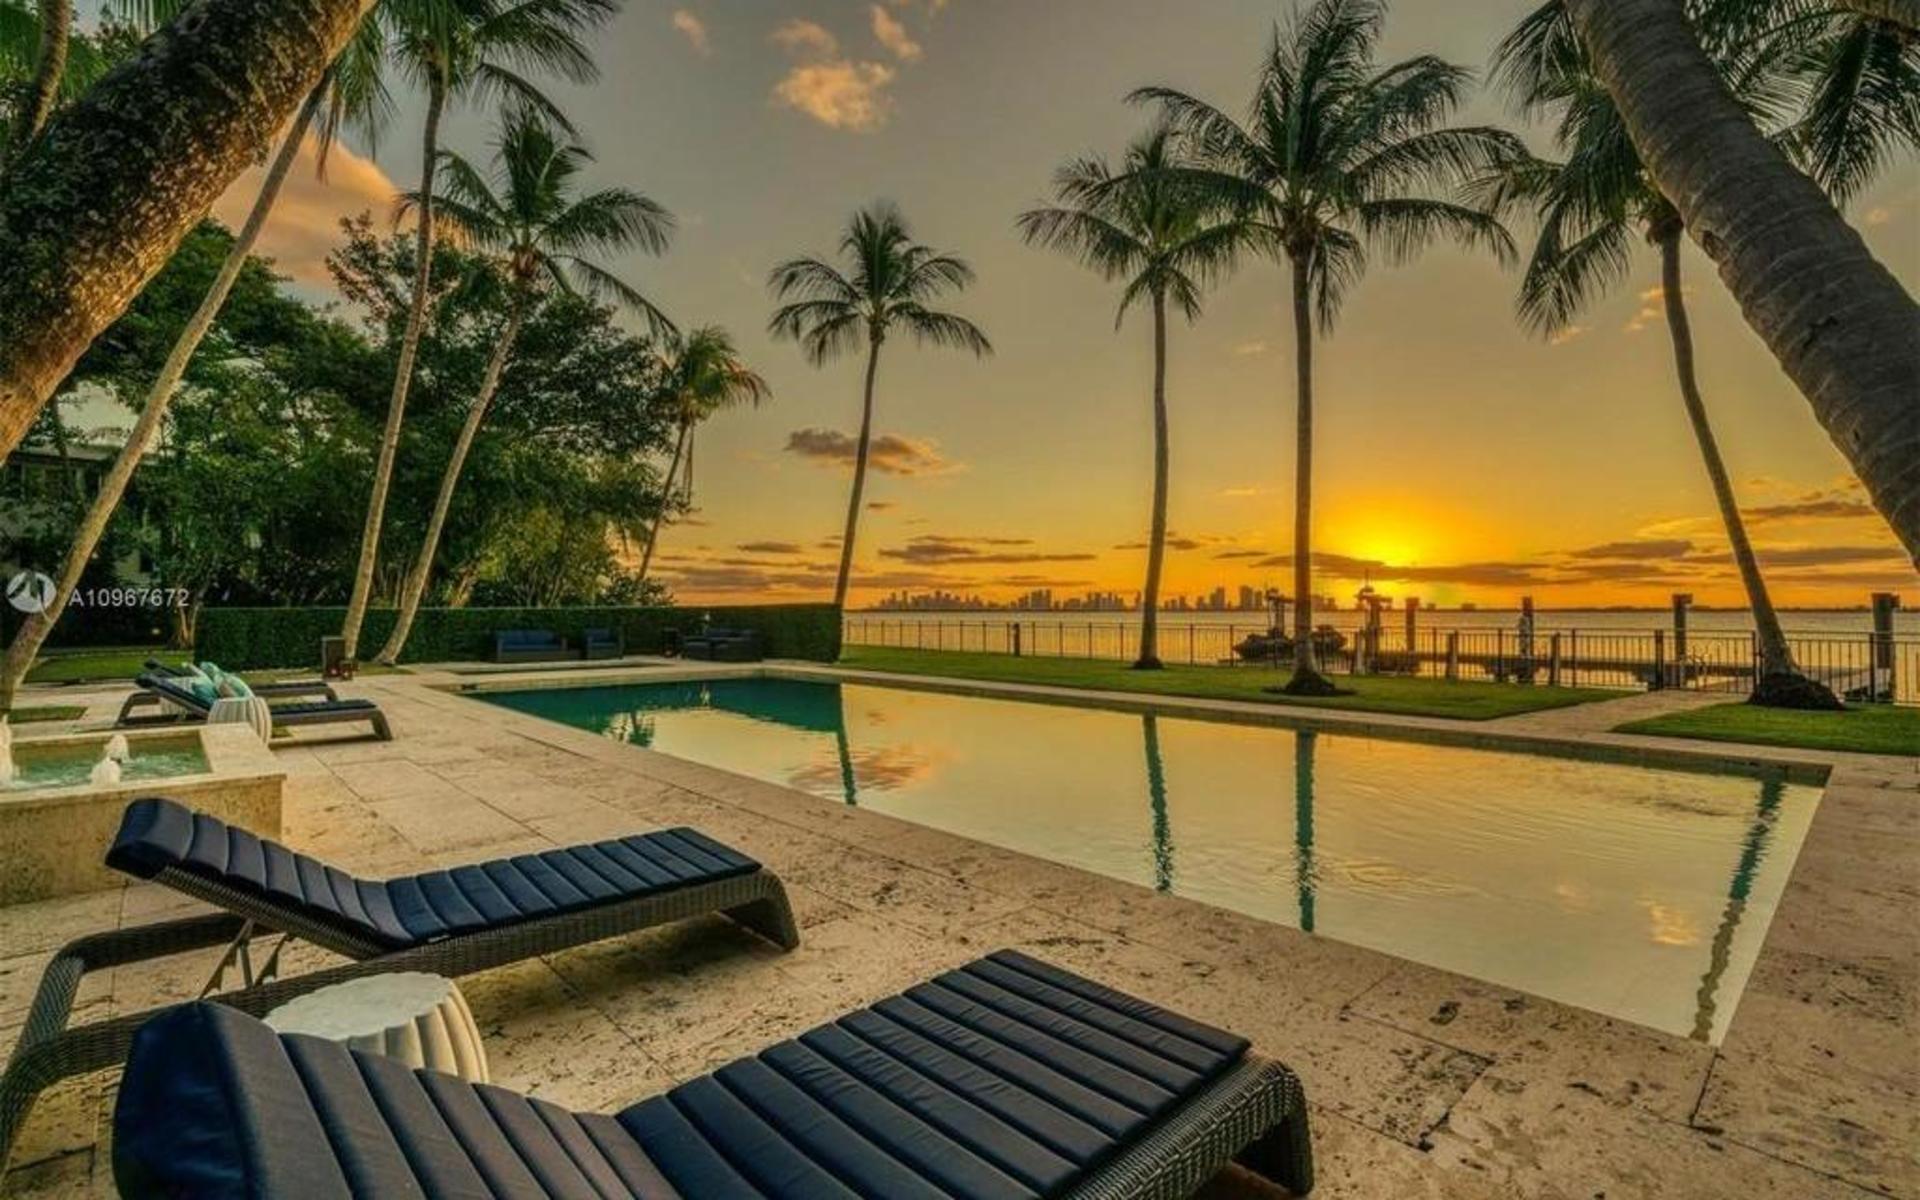 På kvällarna kan man hänga vid poolen och se solen gå ner över Miamis skyline.